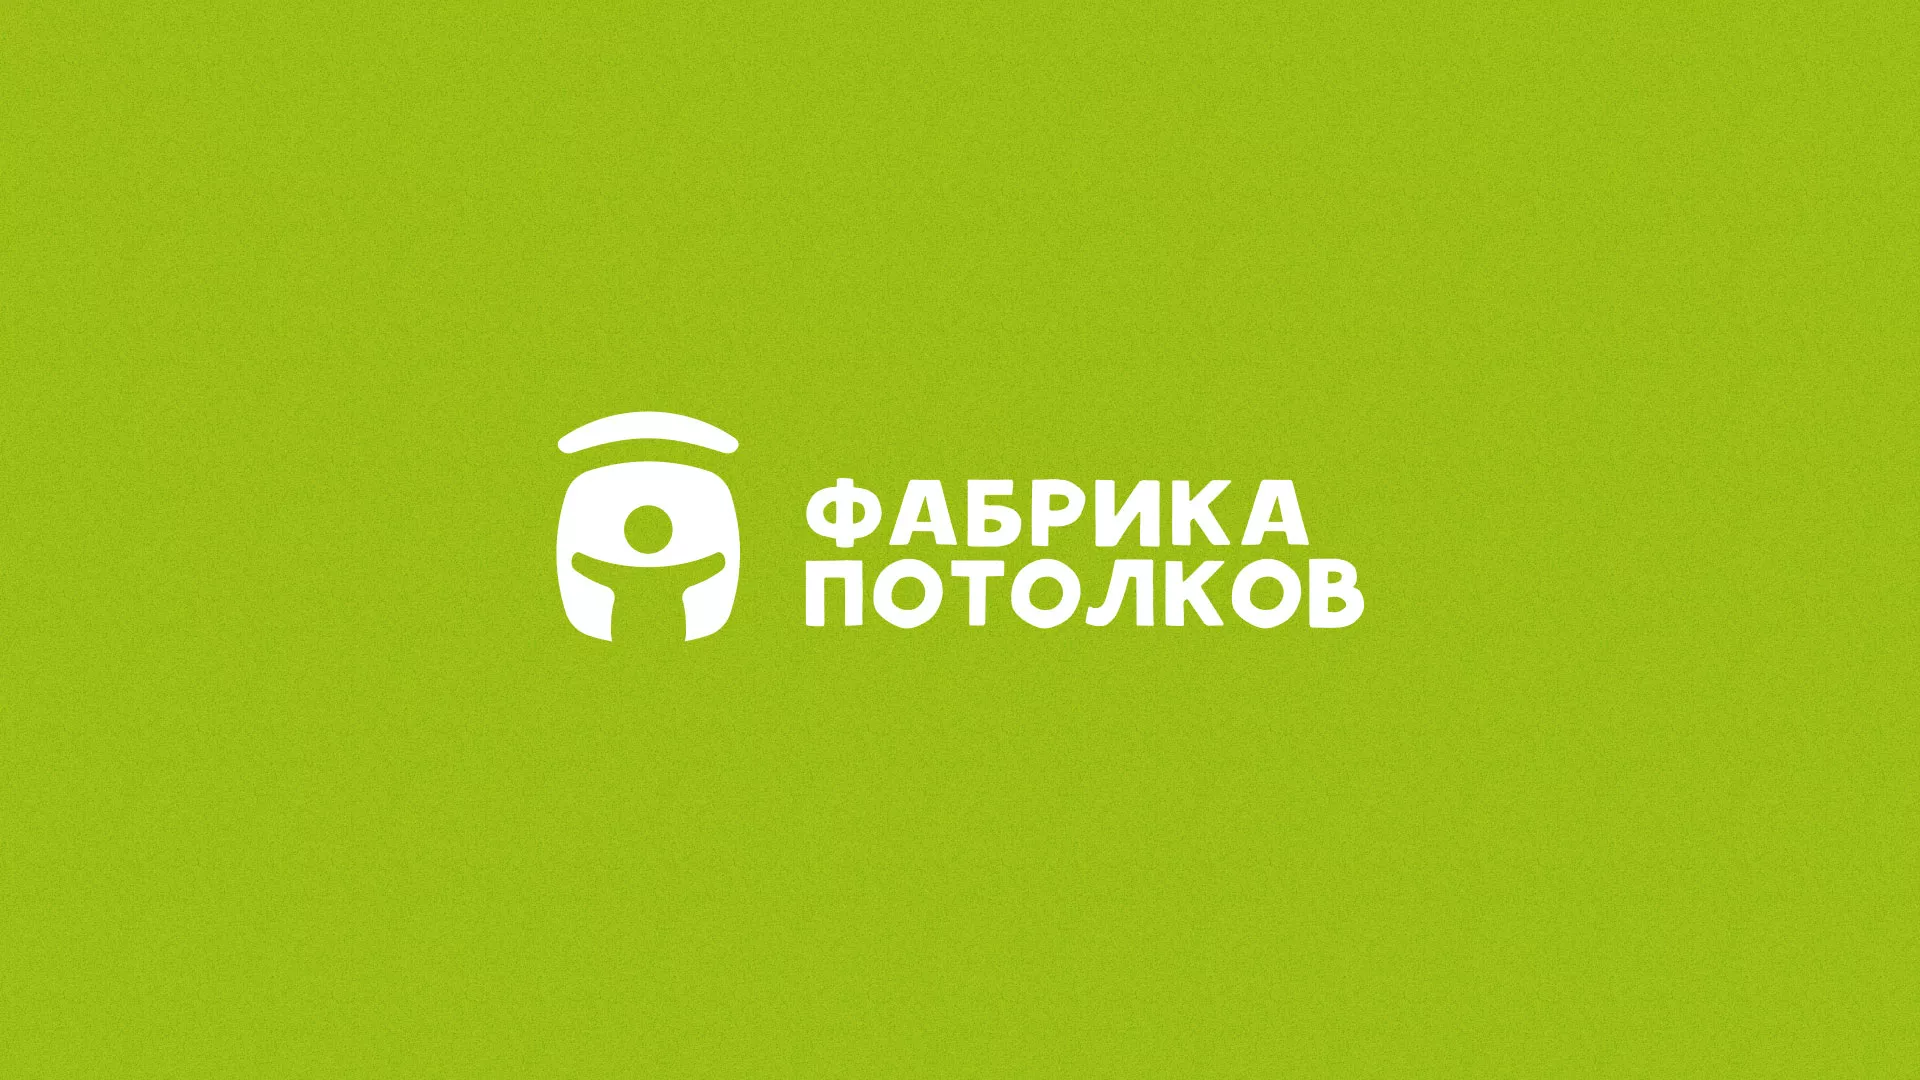 Разработка логотипа для производства натяжных потолков в Кирове